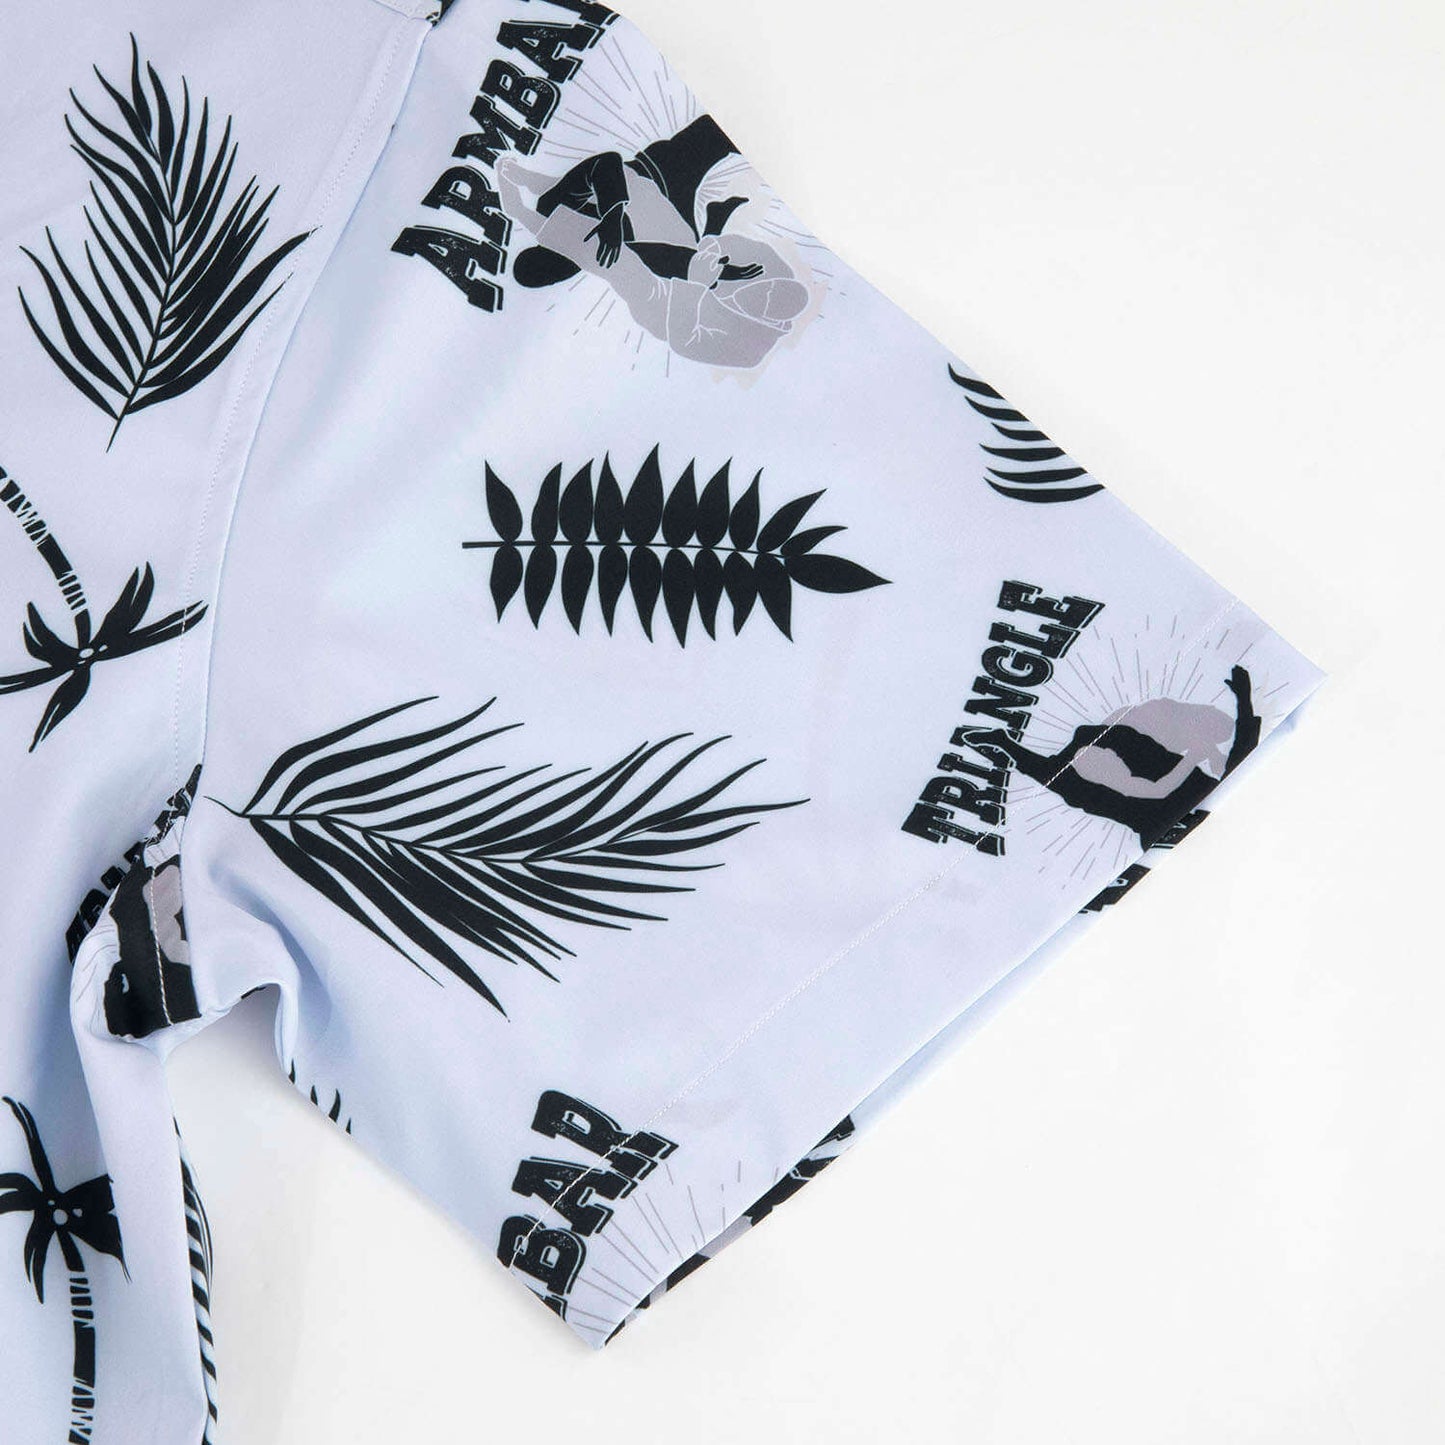 BJJ Submissions Trifecta Hawaiian Beach Shirt - BJJ Swag